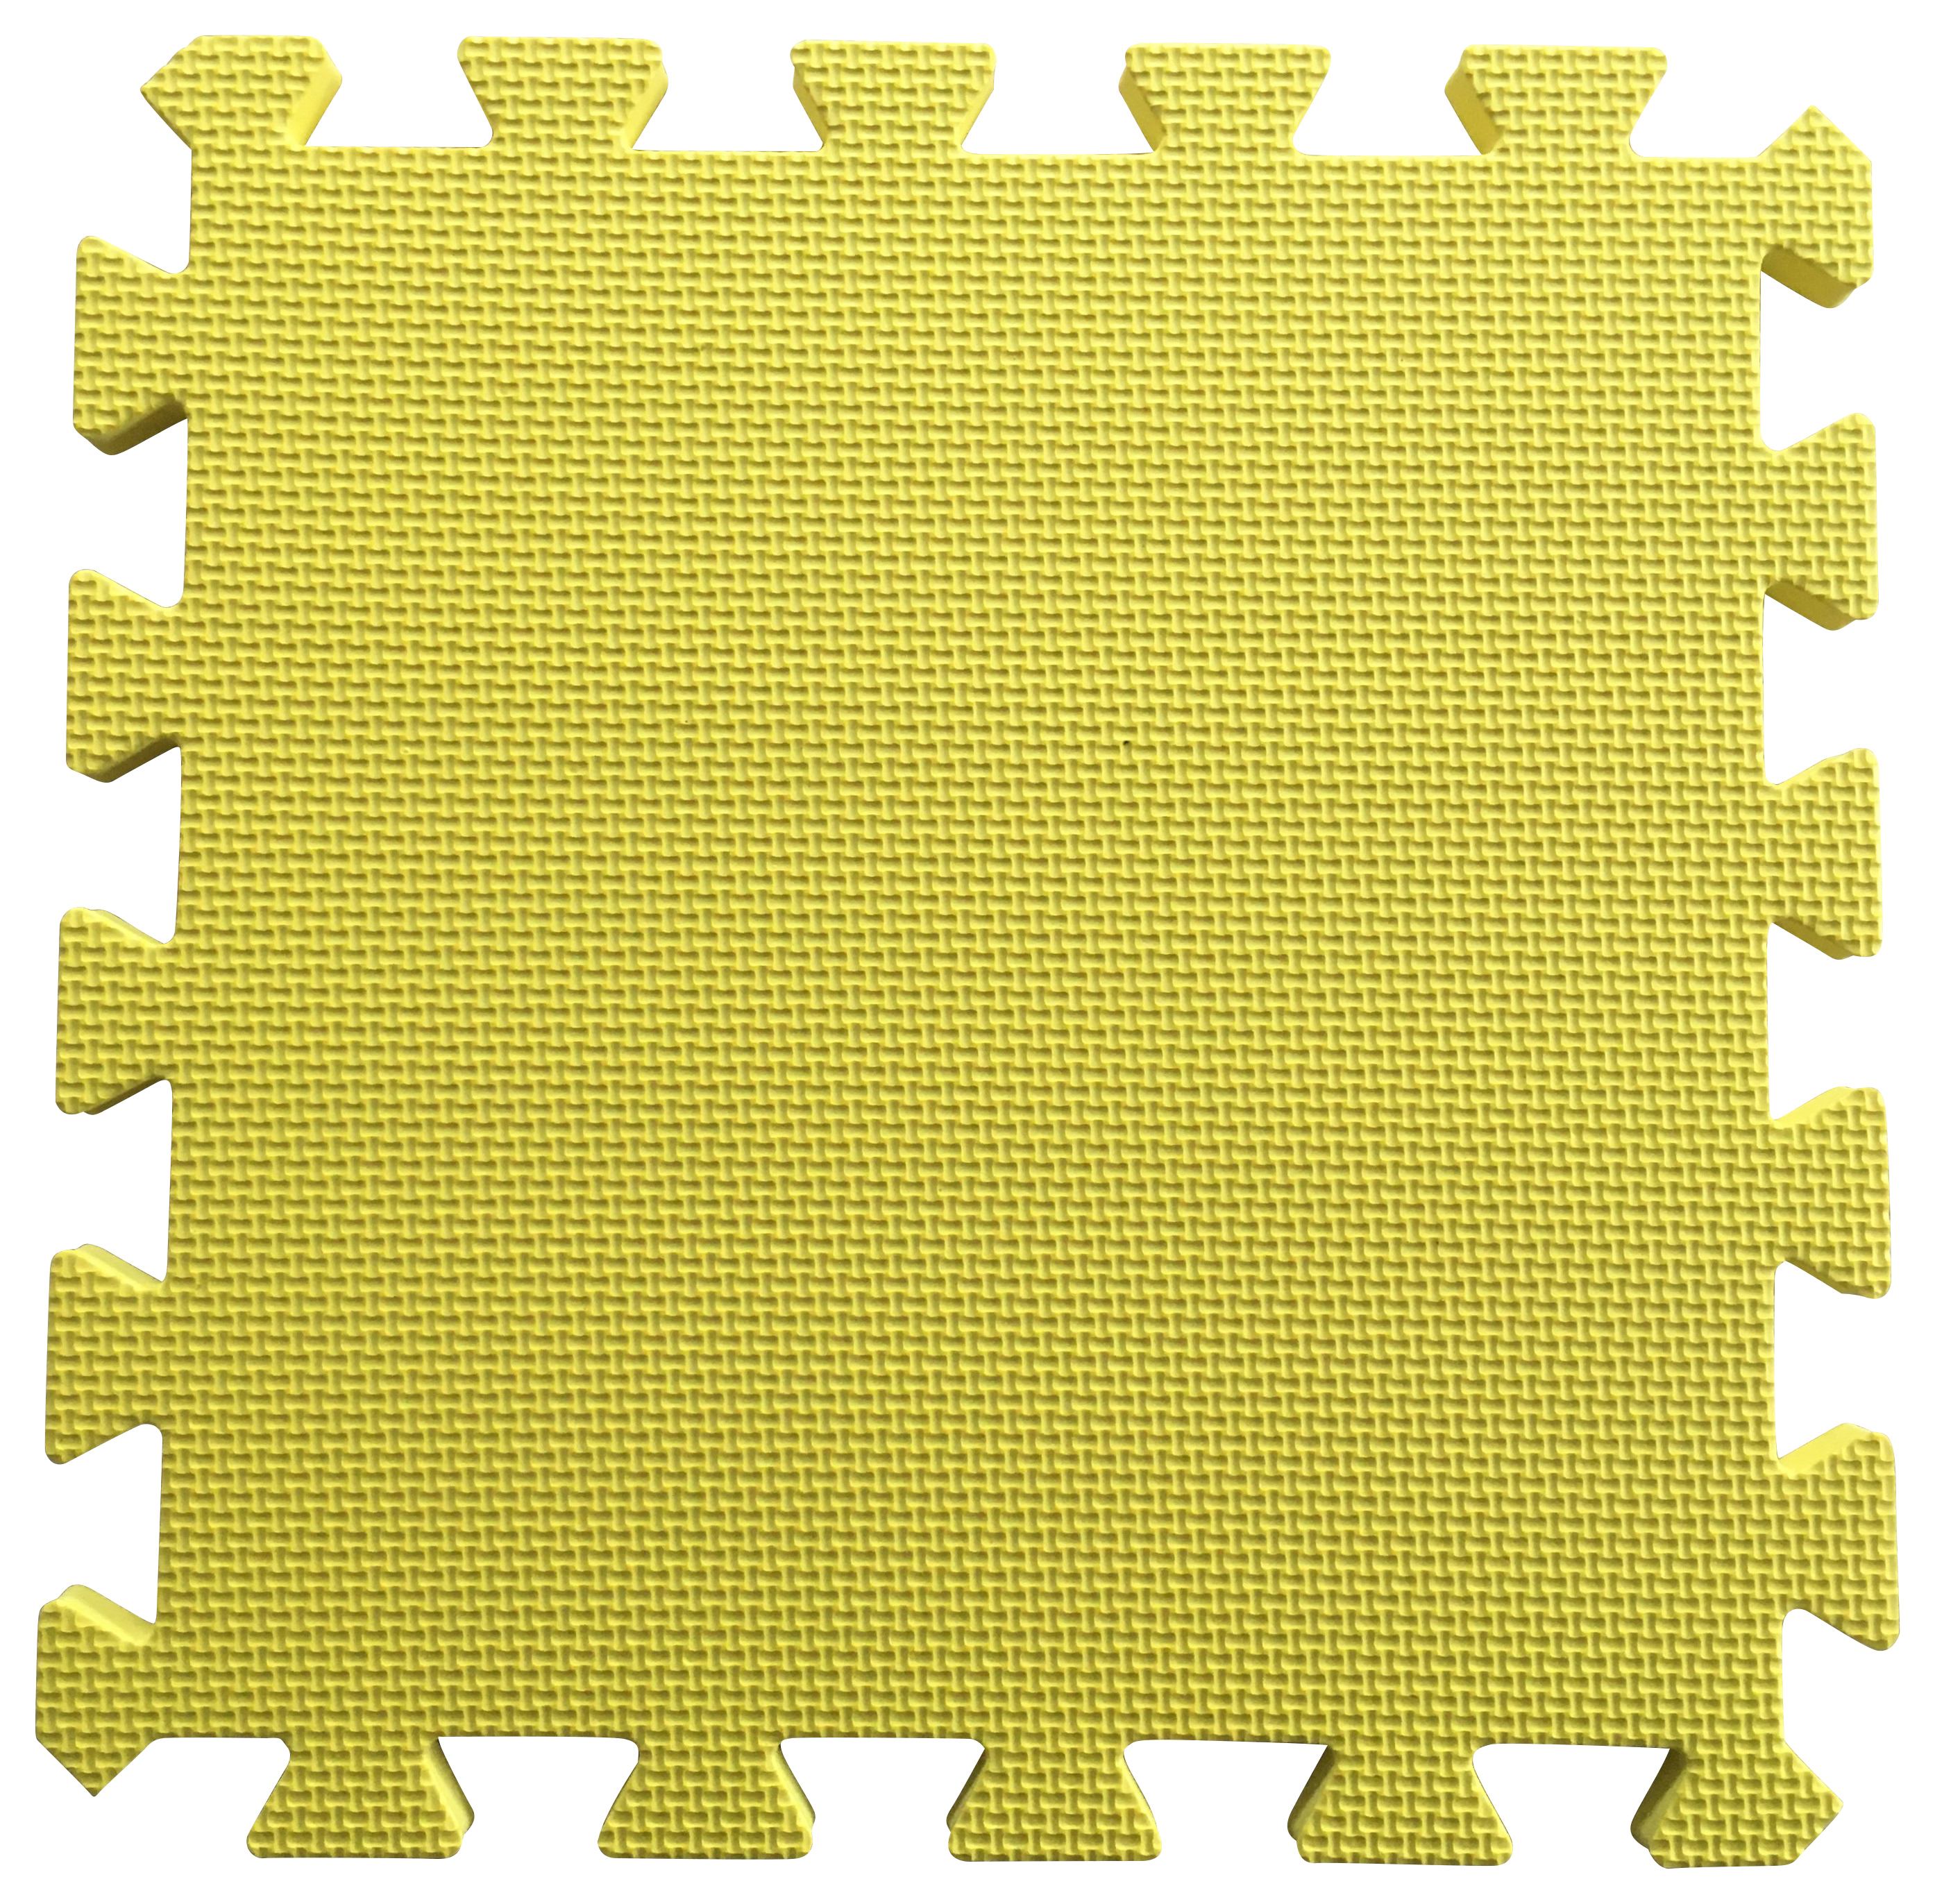 Warm Floor Yellow Interlocking Floor Tiles for Garden Buildings - 6 x 10ft